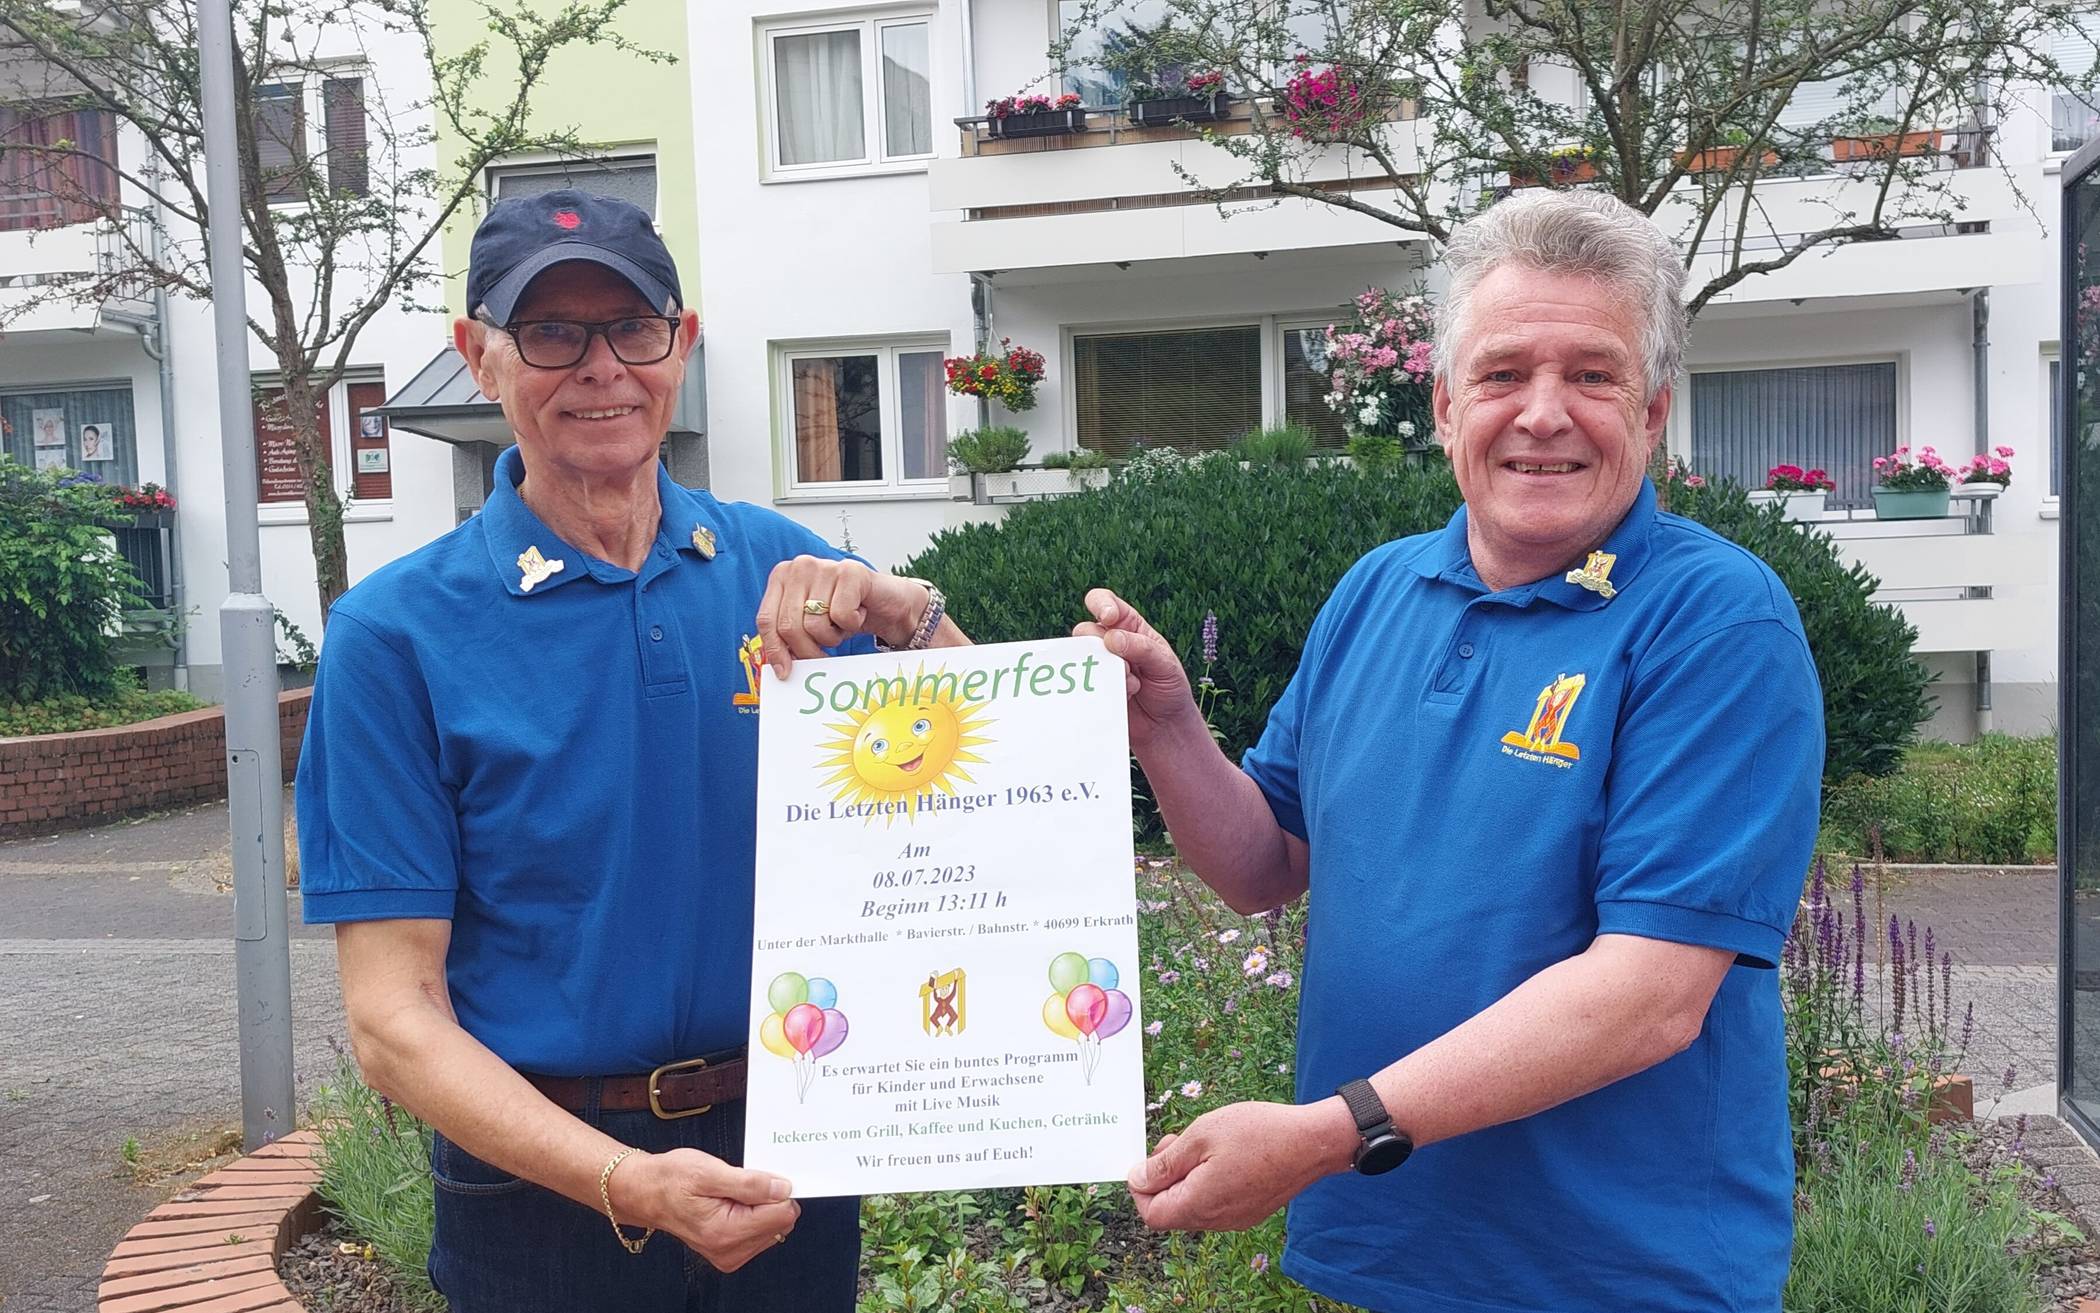  Werner Scheter (zweiter Vorsitzender der KG „Die letzten Hänger) und Peter Arno Schmidt (Präsident der KG „Die letzten Hänger) freuen sich auf das Sommerfest an diesem Wochenende.  